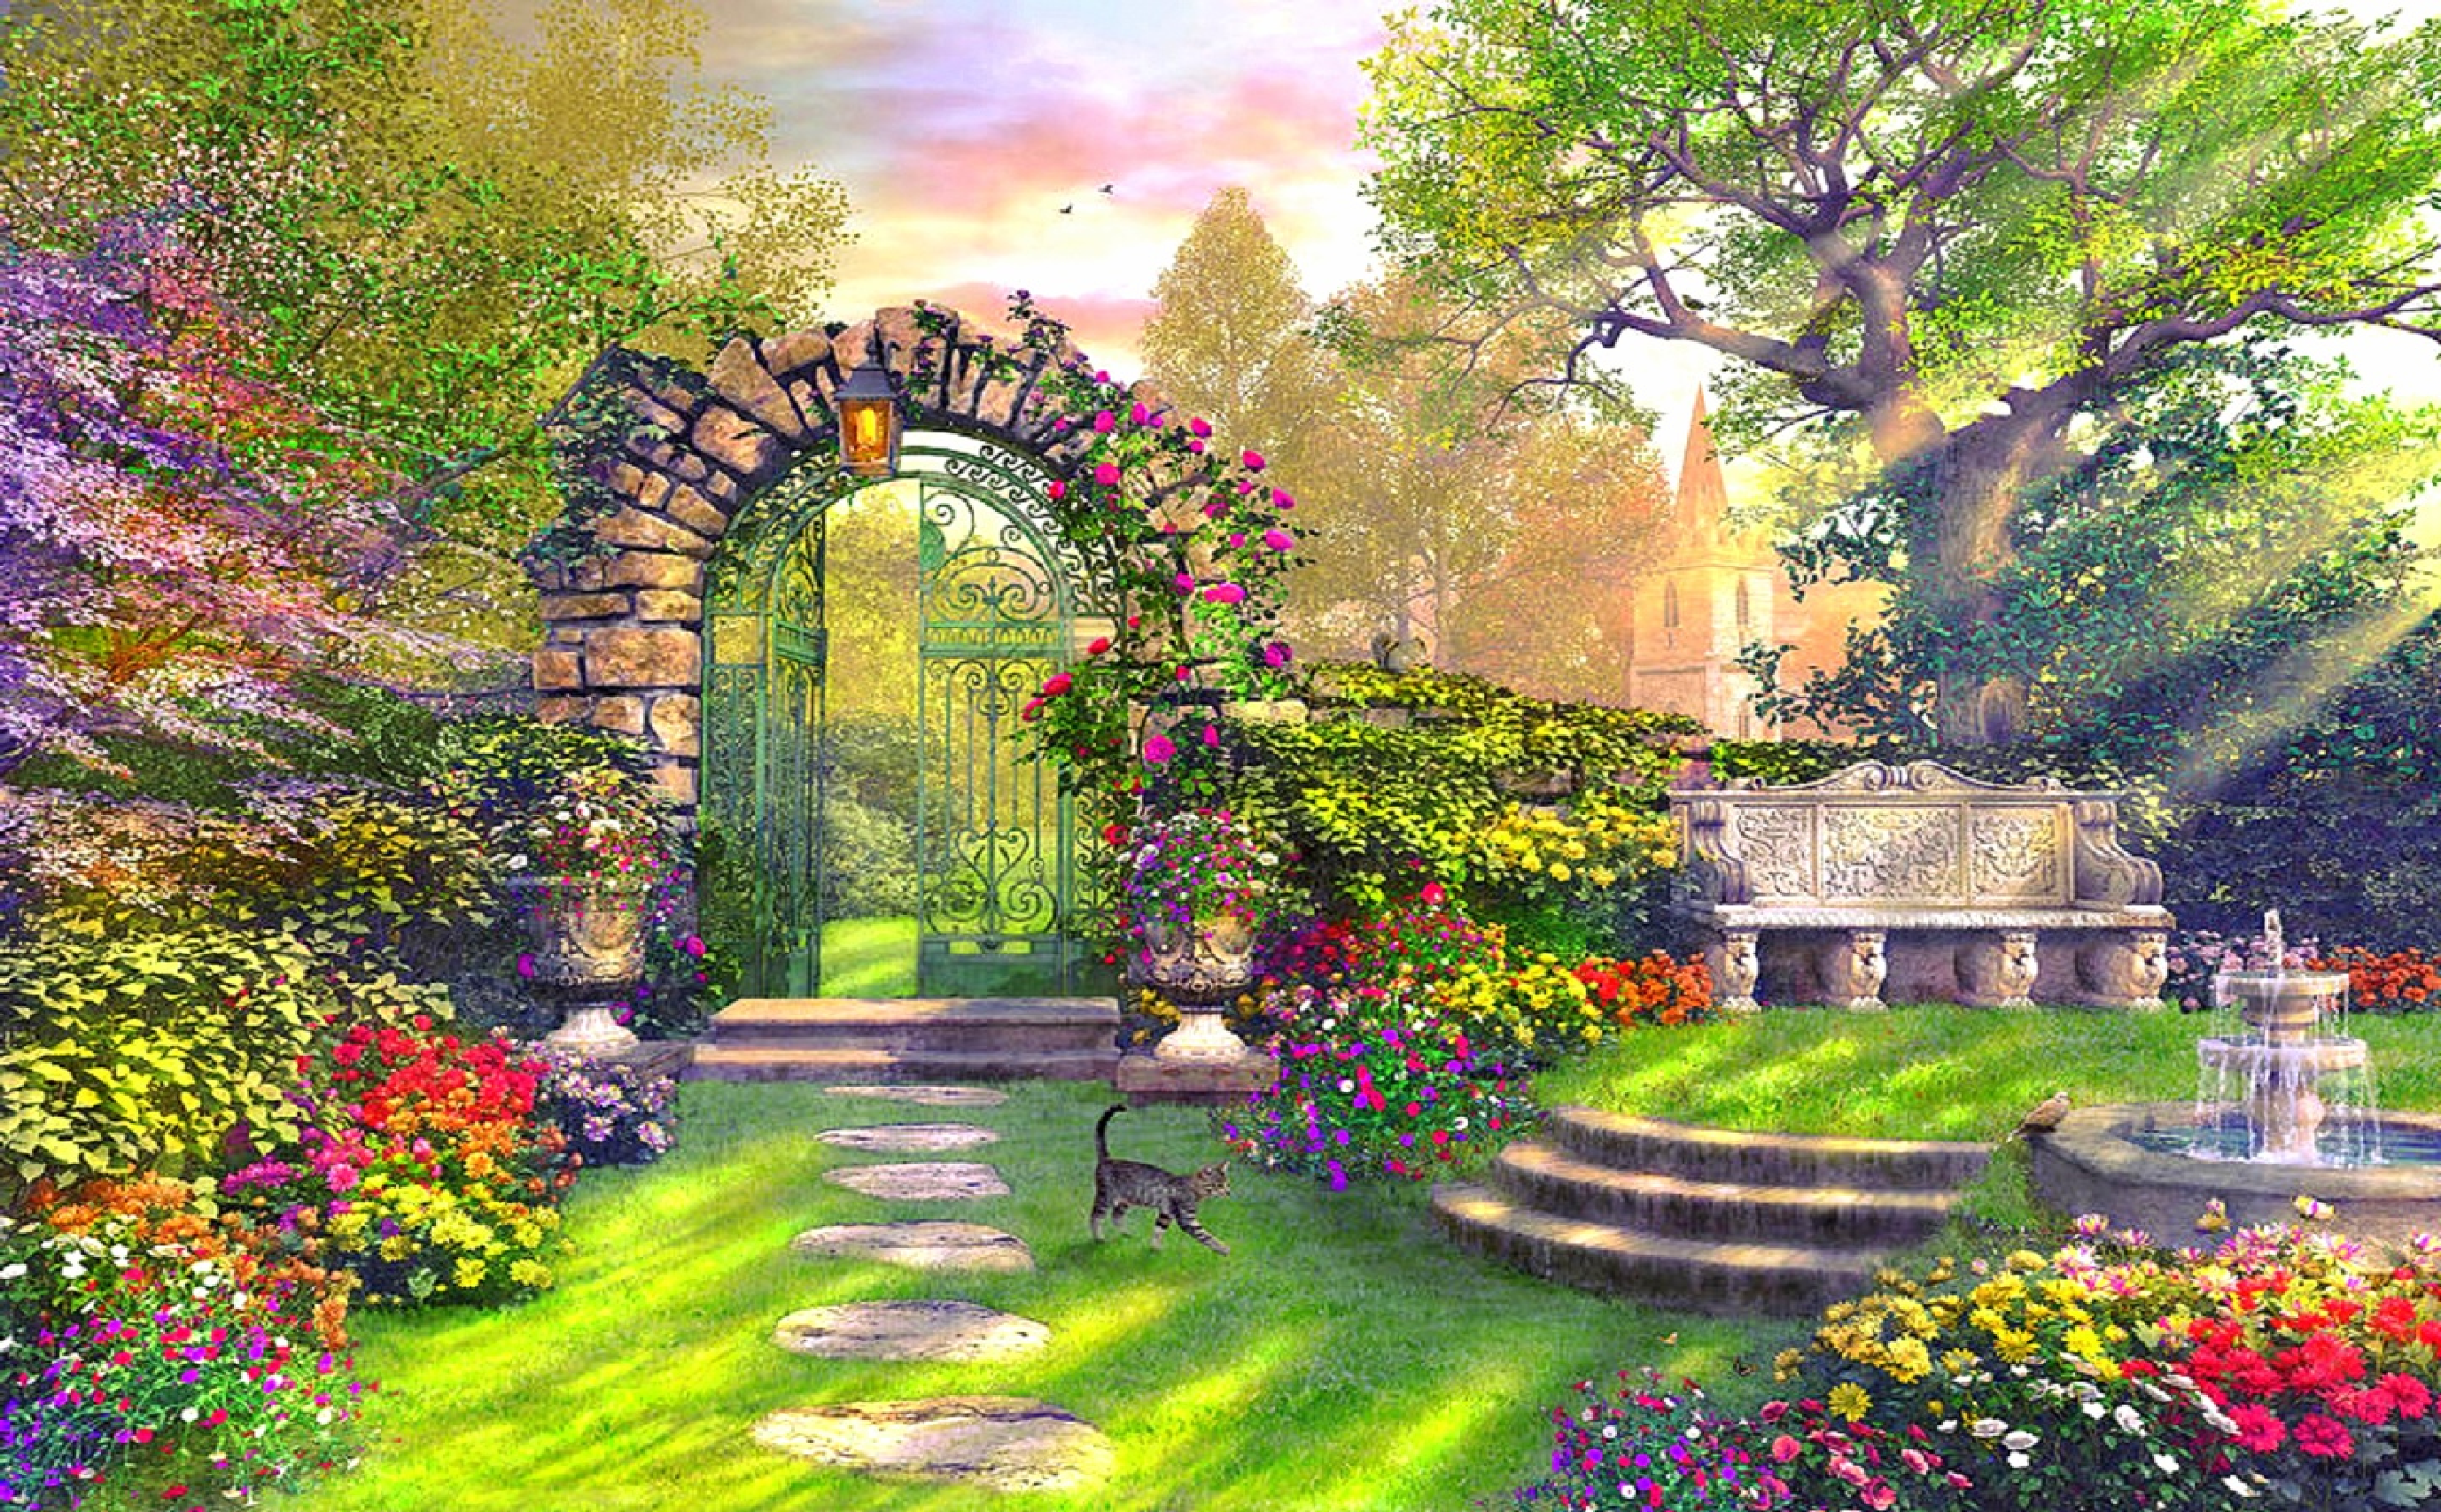 Thoả sức trẻ hóa tinh thần của bạn với hình ảnh khu vườn tưởng tượng tuyệt đẹp. Không gian lãng mạn với những bông hoa đa dạng và không gian xanh tươi mới sẽ làm bạn hài lòng và đem đến cho bạn cảm giác thư giãn và yên bình.